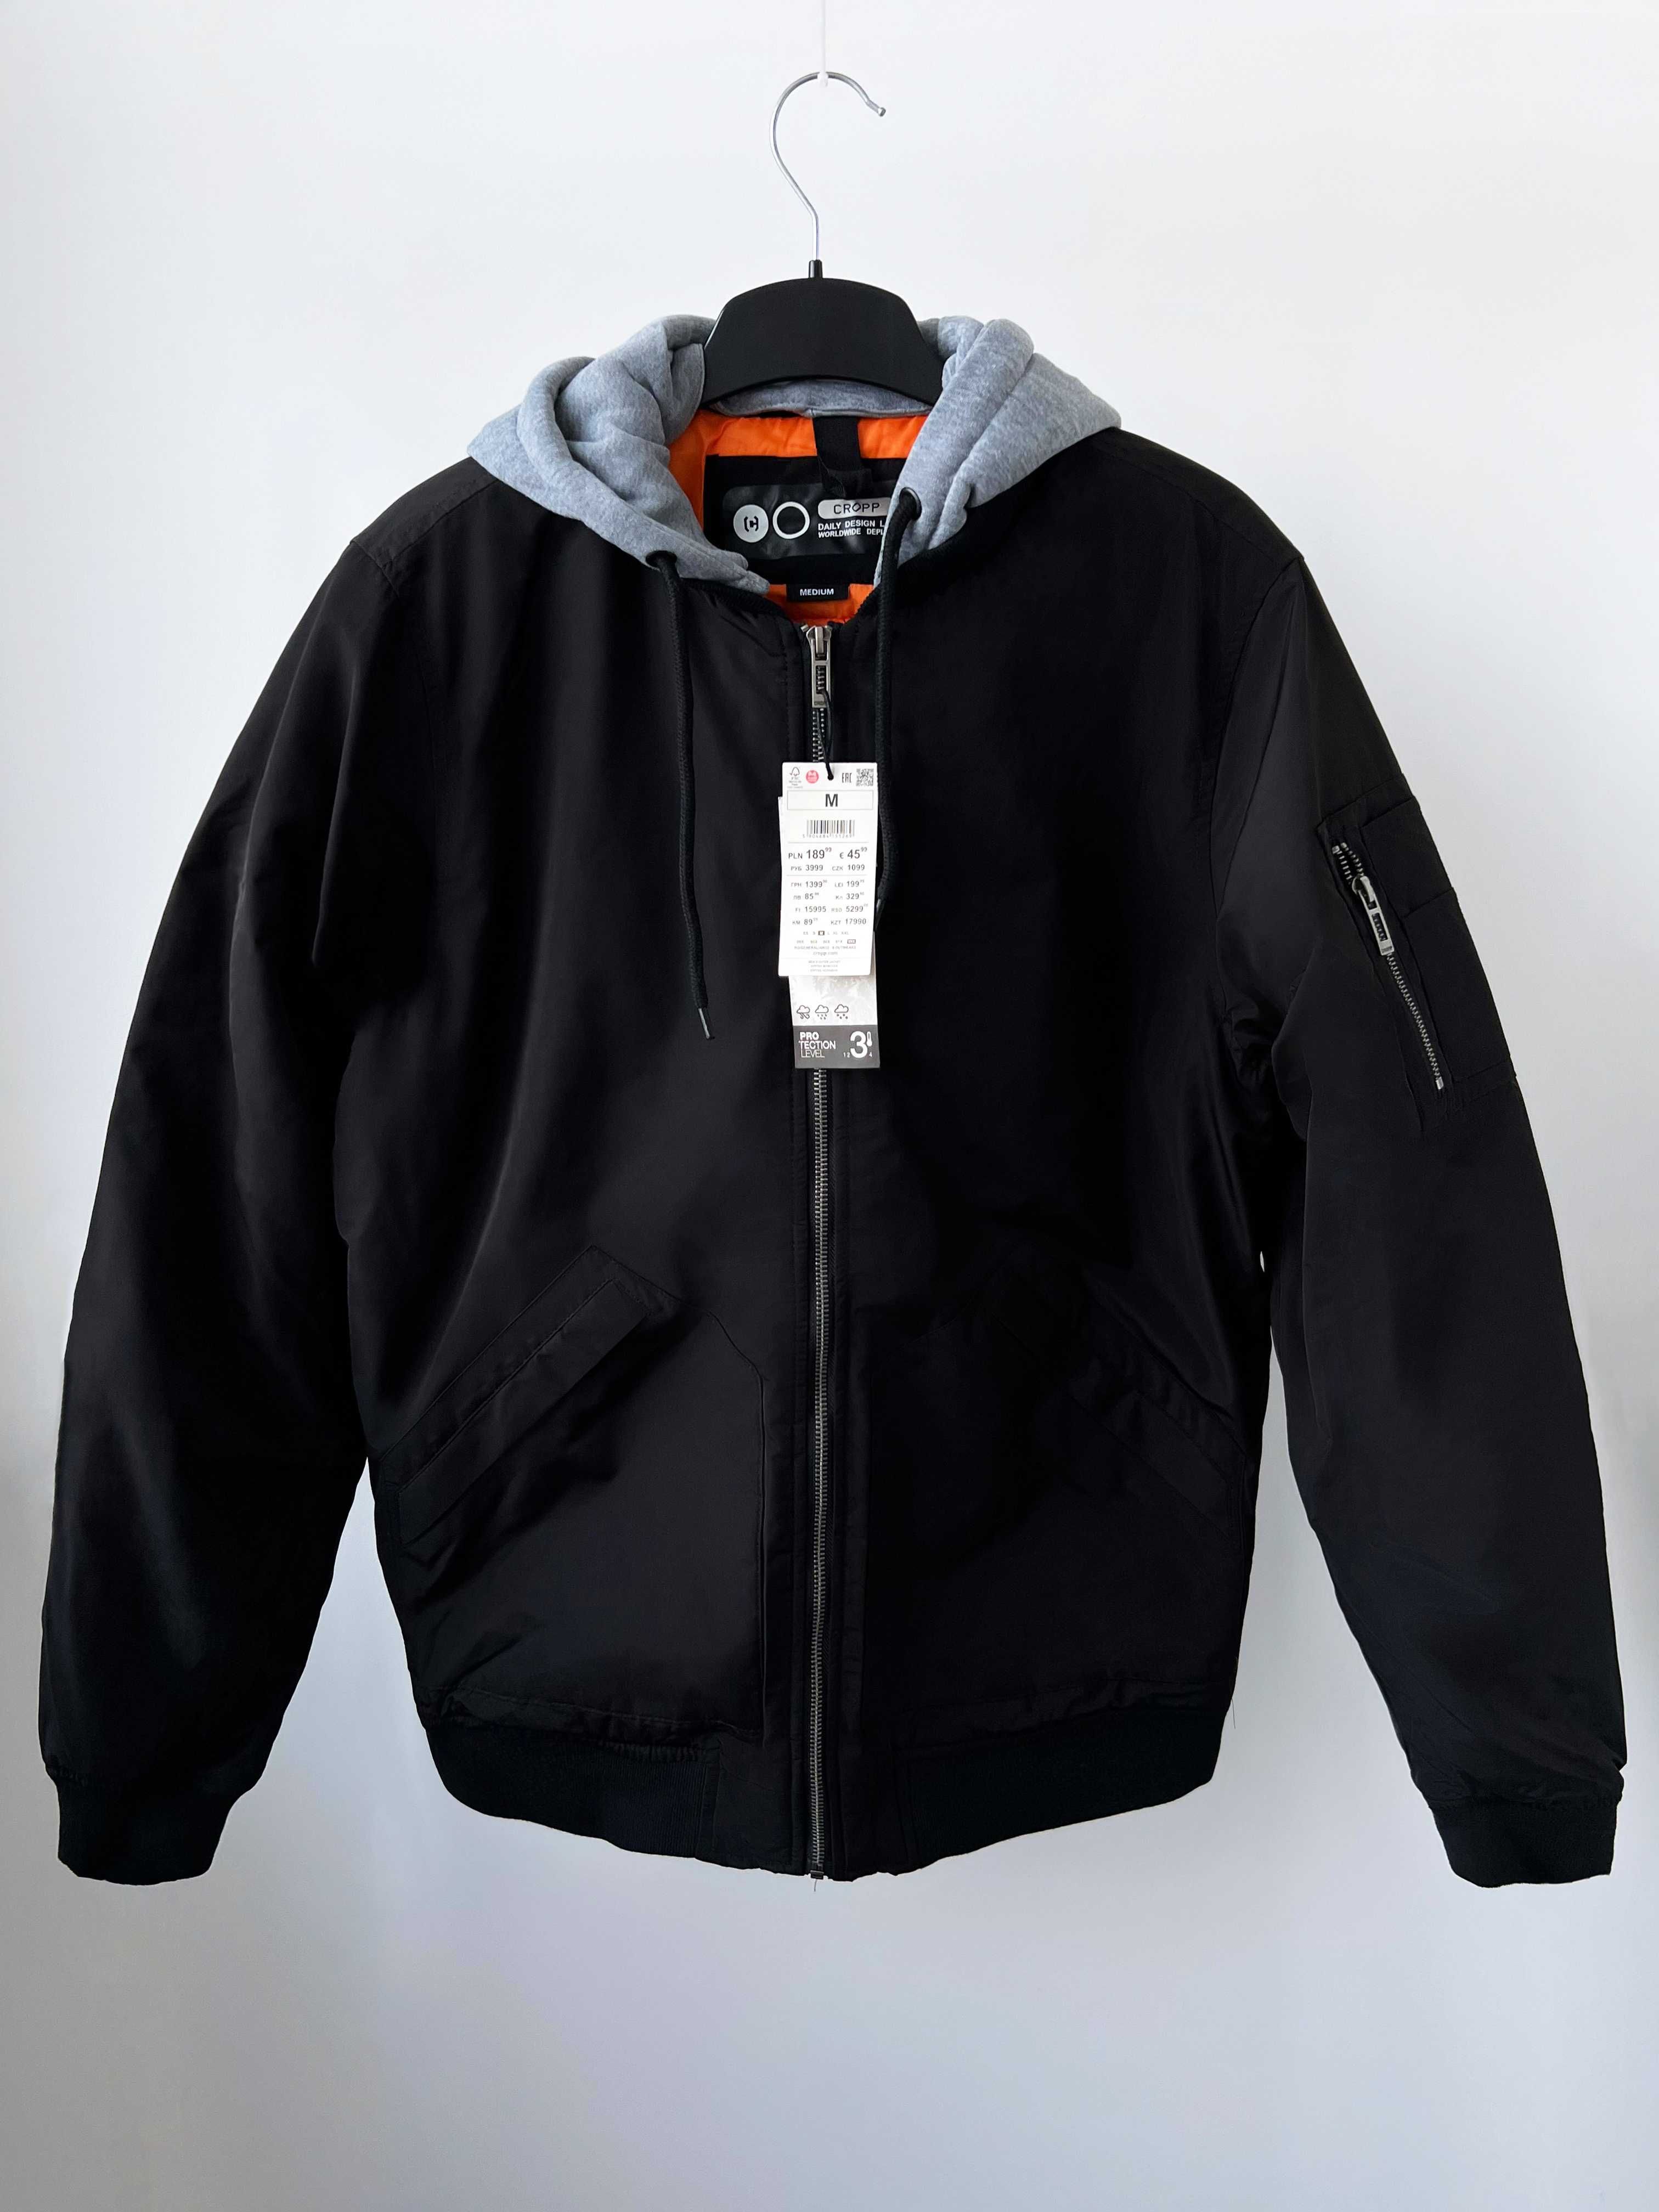 Куртка бомбер Cropp чоловіча нова, розмір M (також у продажу L,XL,XXL)